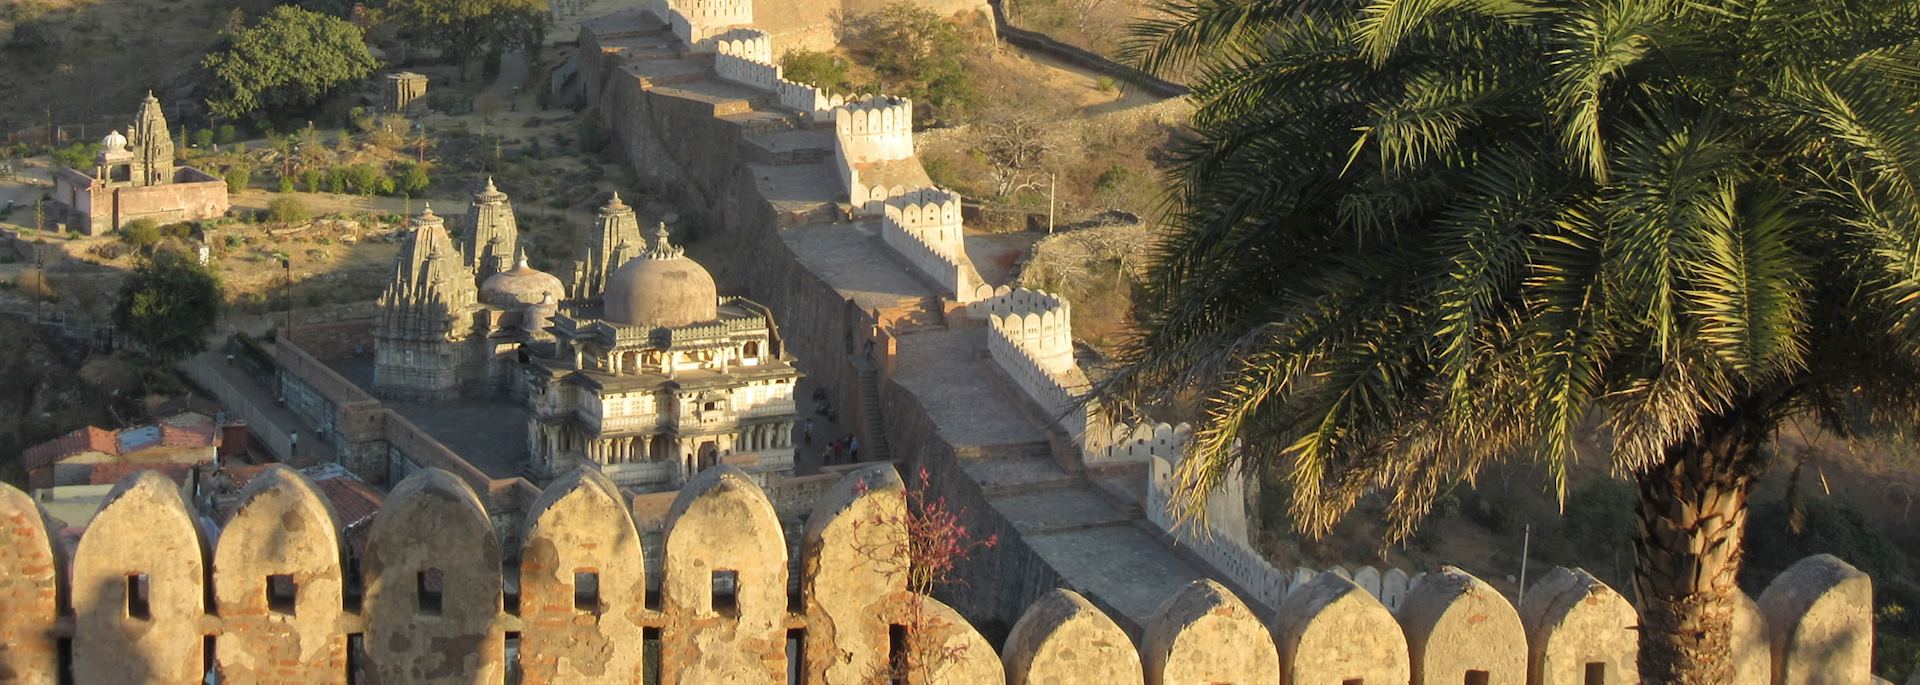 Kumbhalgarh Fortress